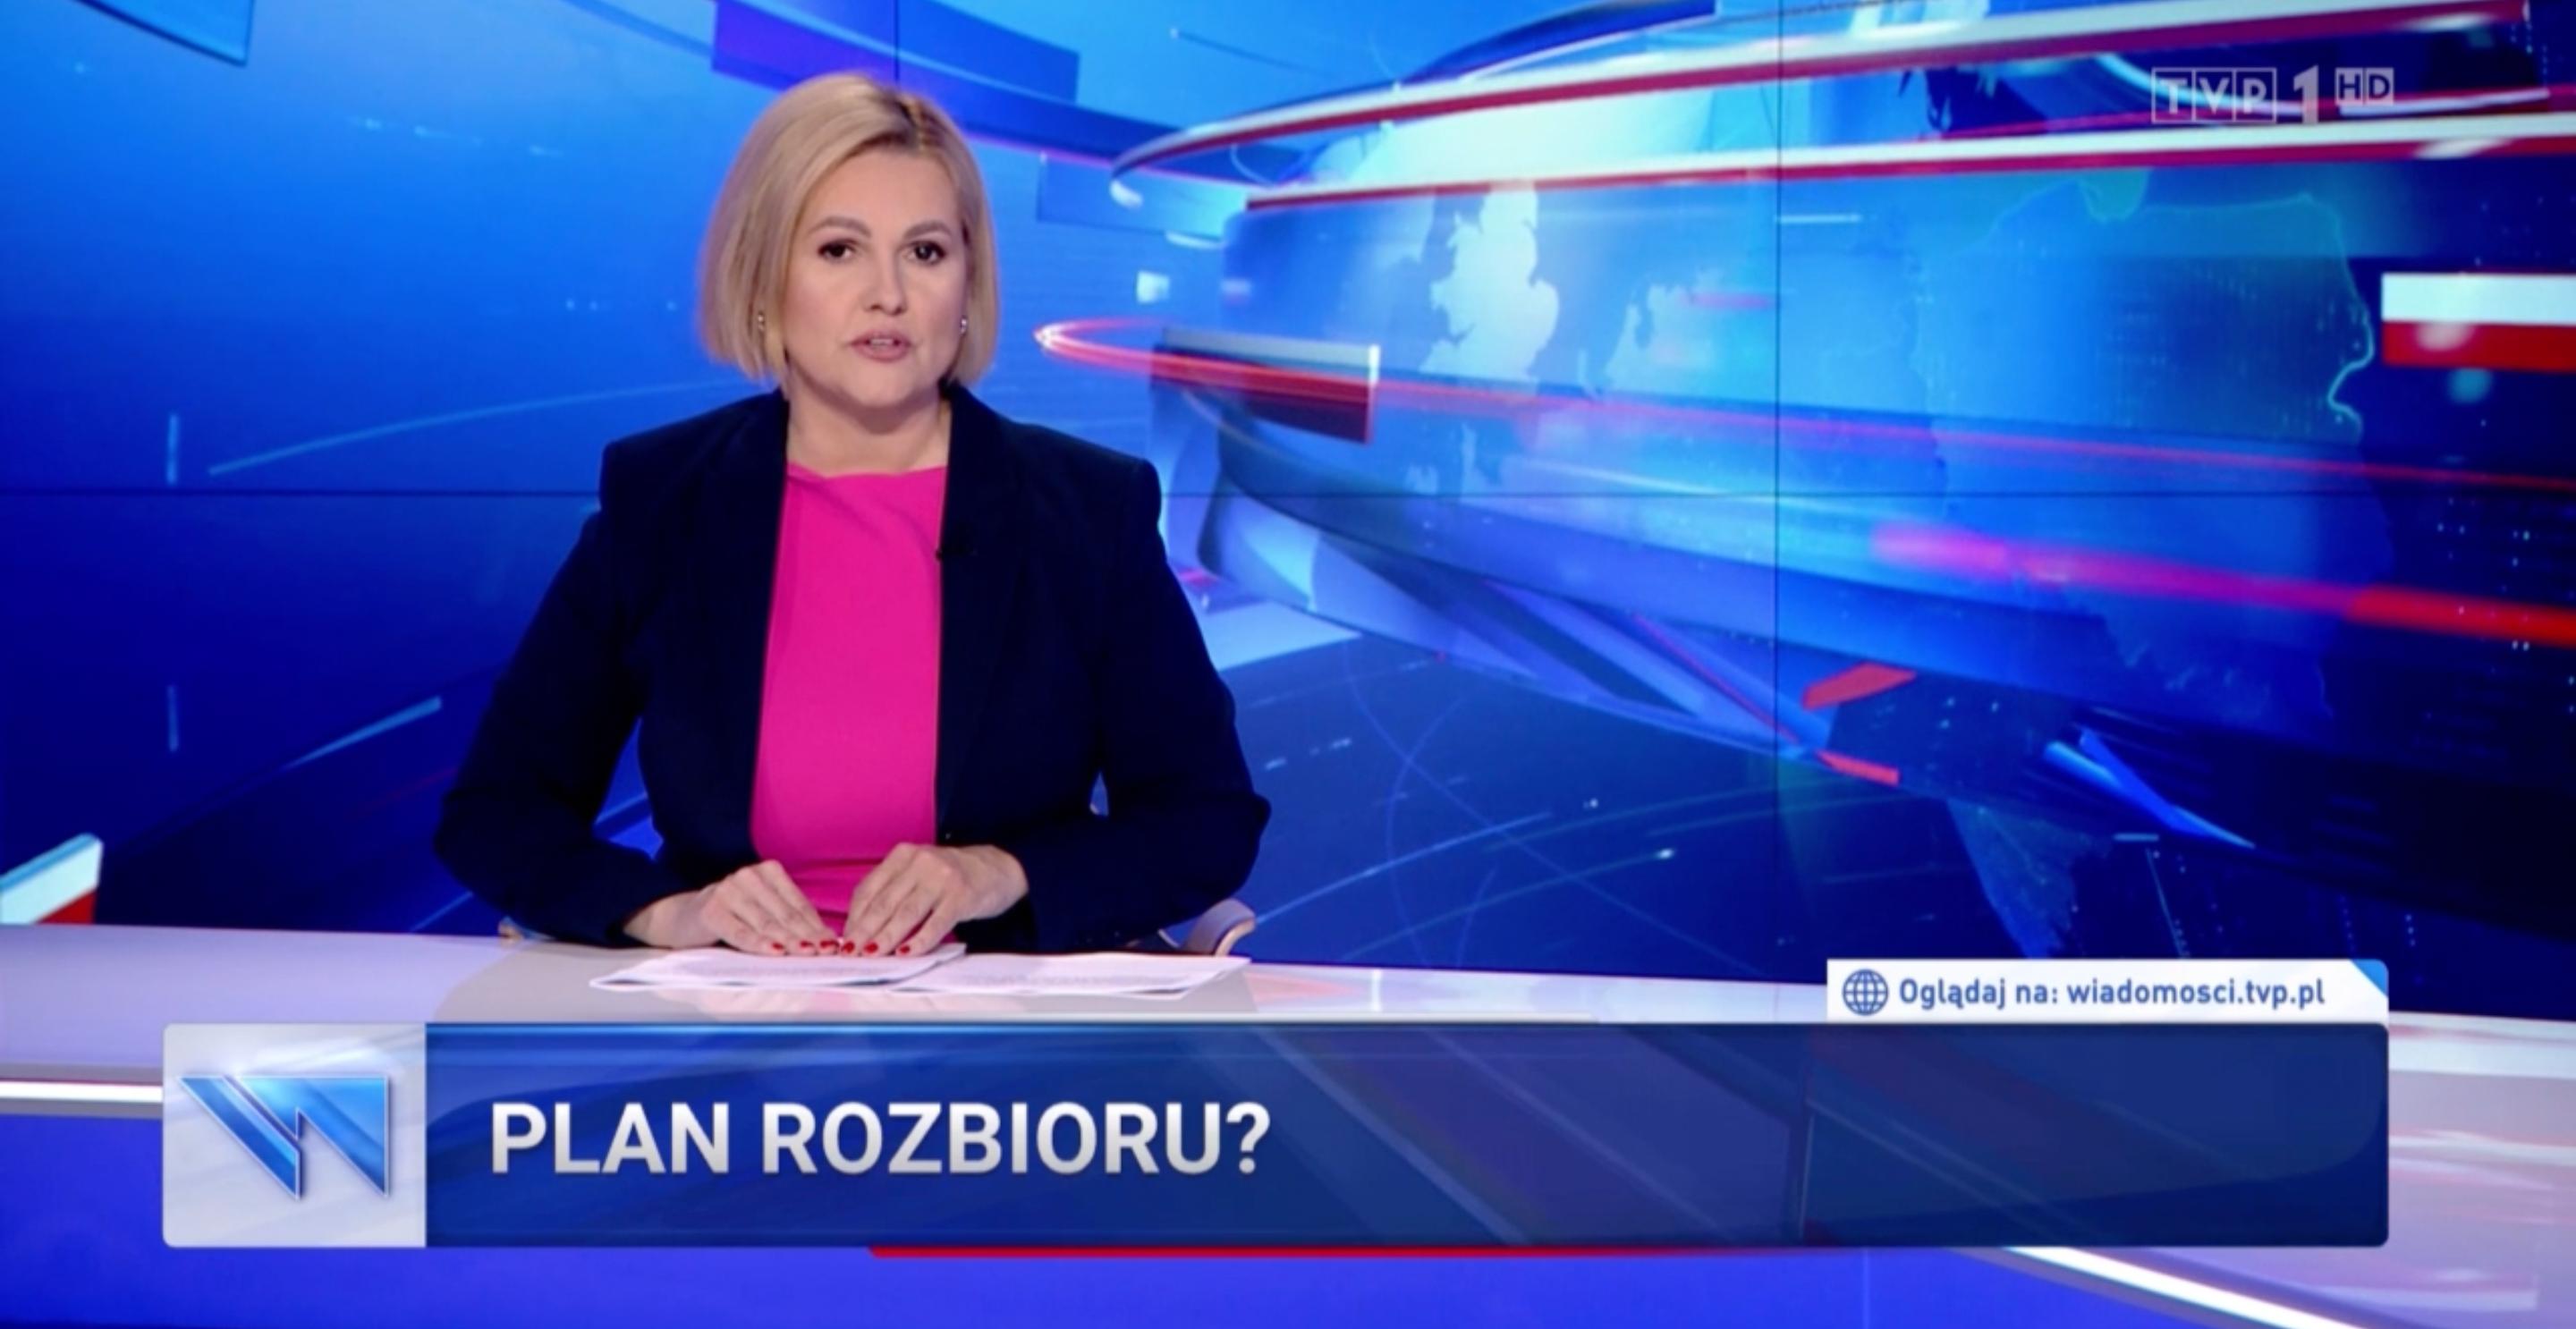 Wiadomości TVP: Tusk planował rozbiór Polski